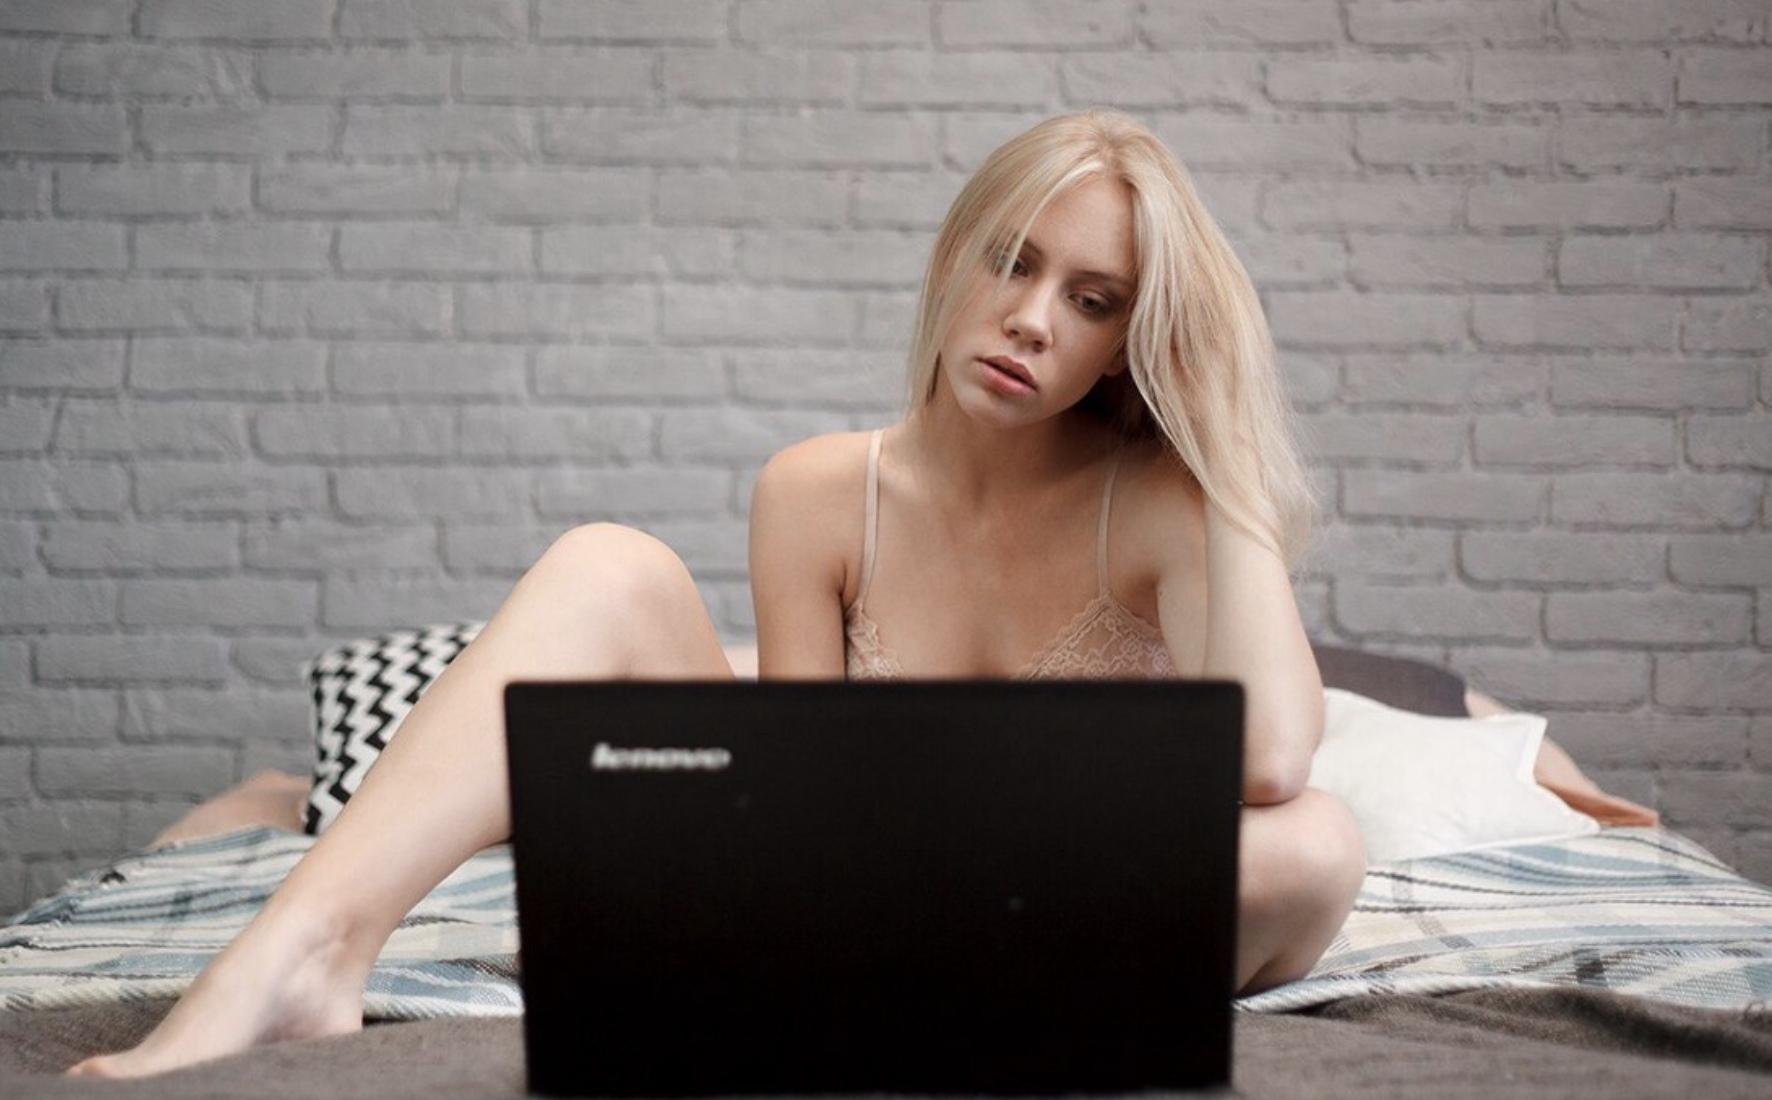 Вебкам с мамой. Девушка перед ноутбуком. Блондинка с ноутбуком. Блондинка за ноутбуком. Девушка вебкам модель.